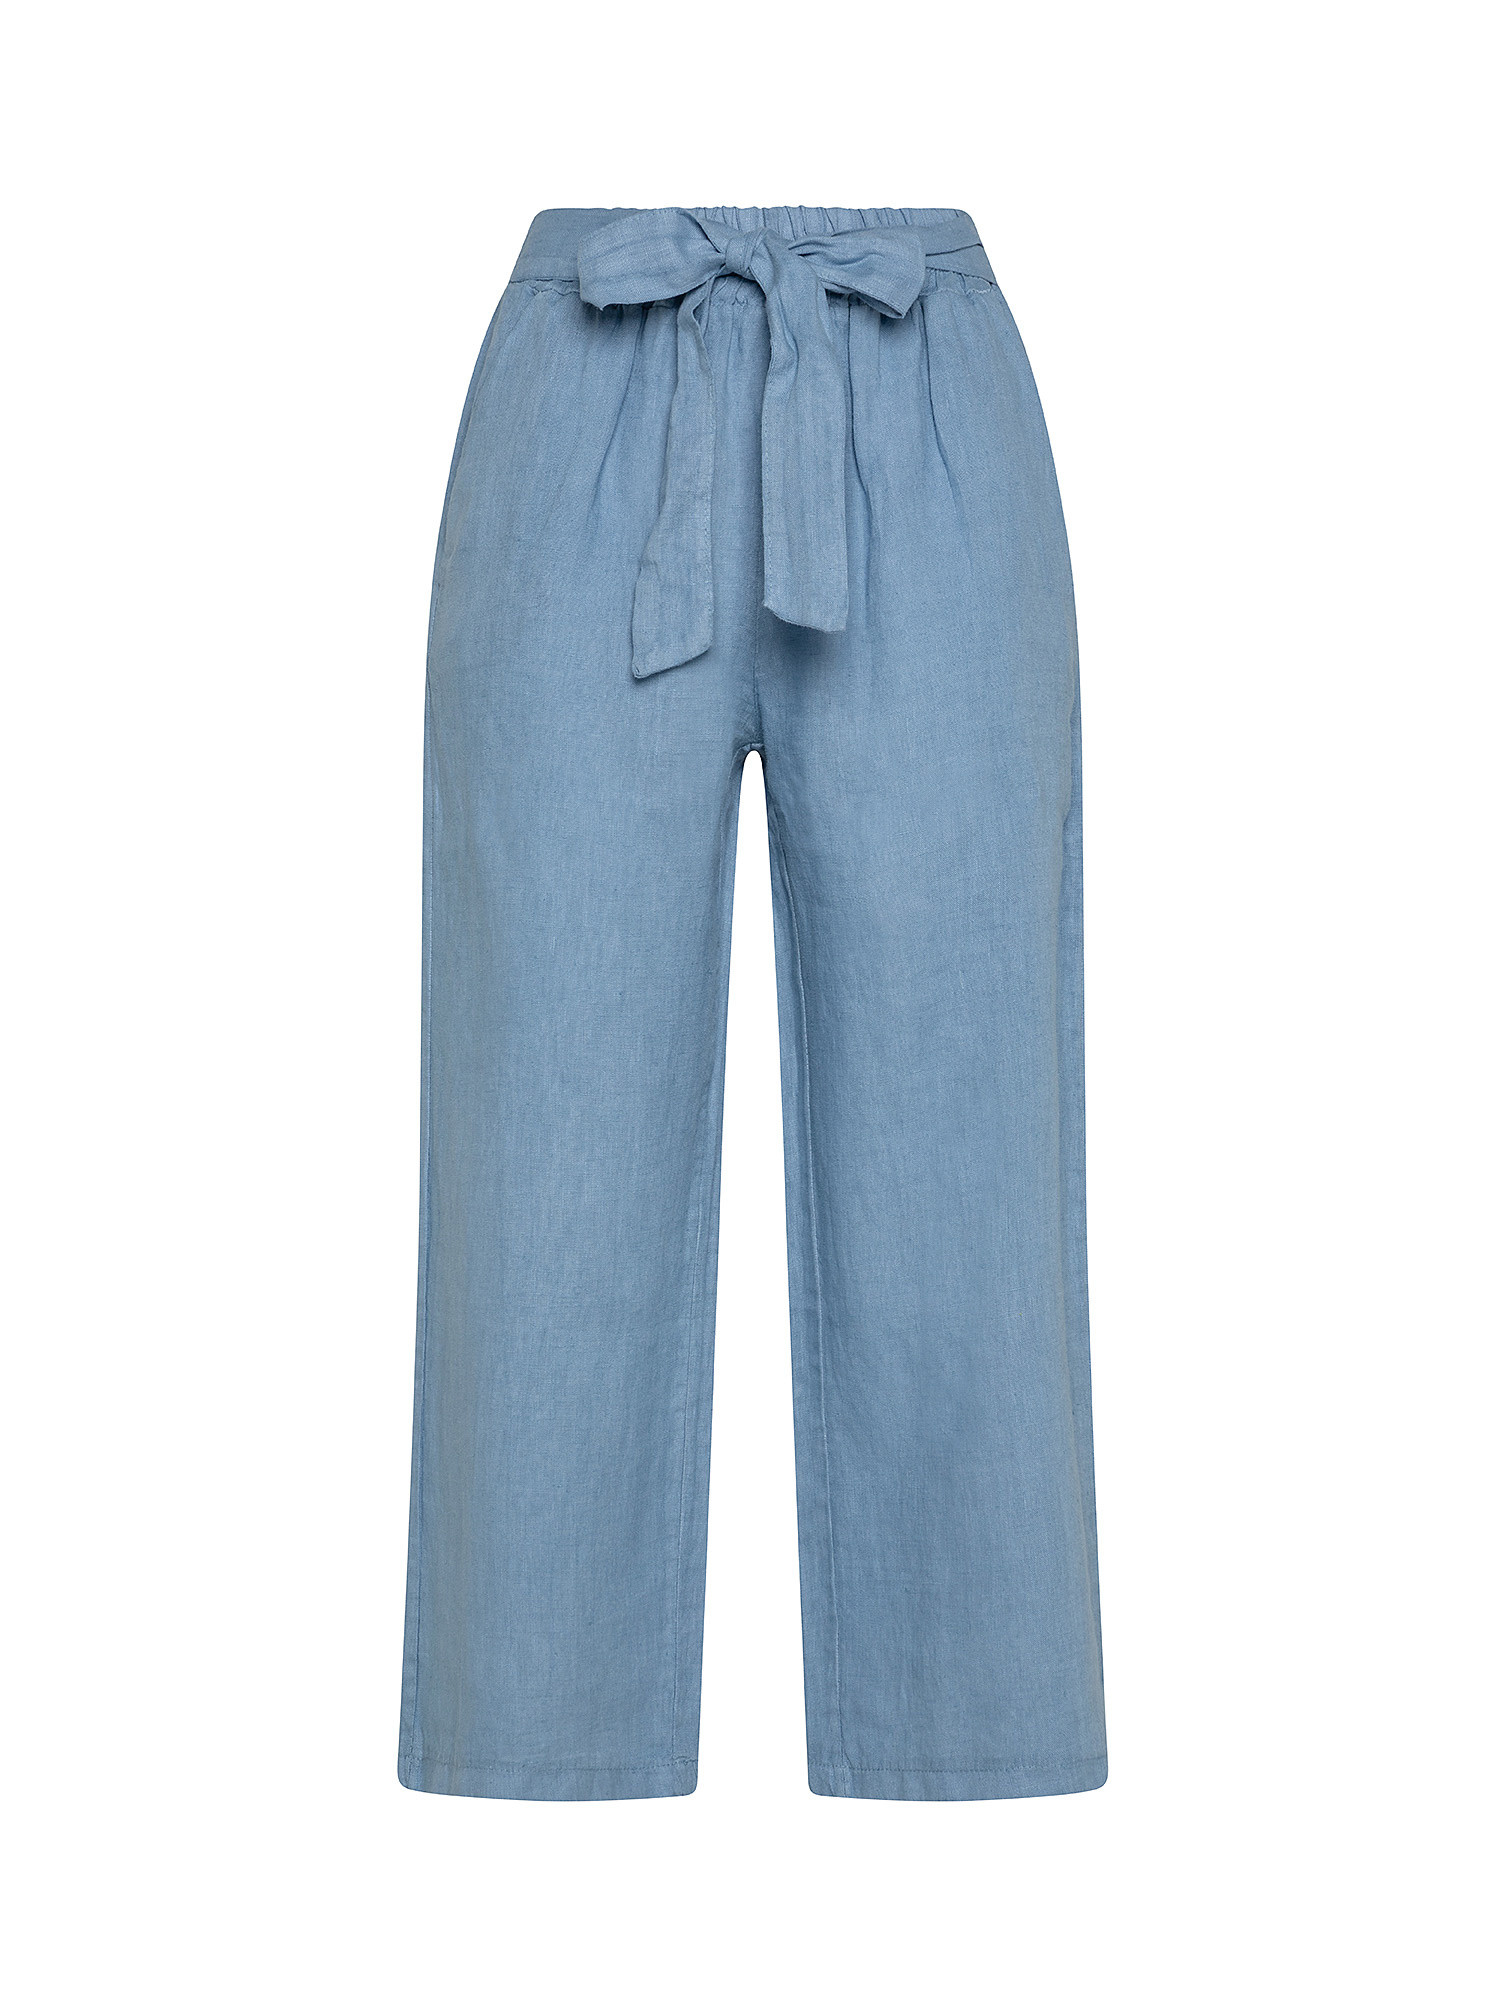 Pantalone puro lino con fusciacca, Azzurro, large image number 0